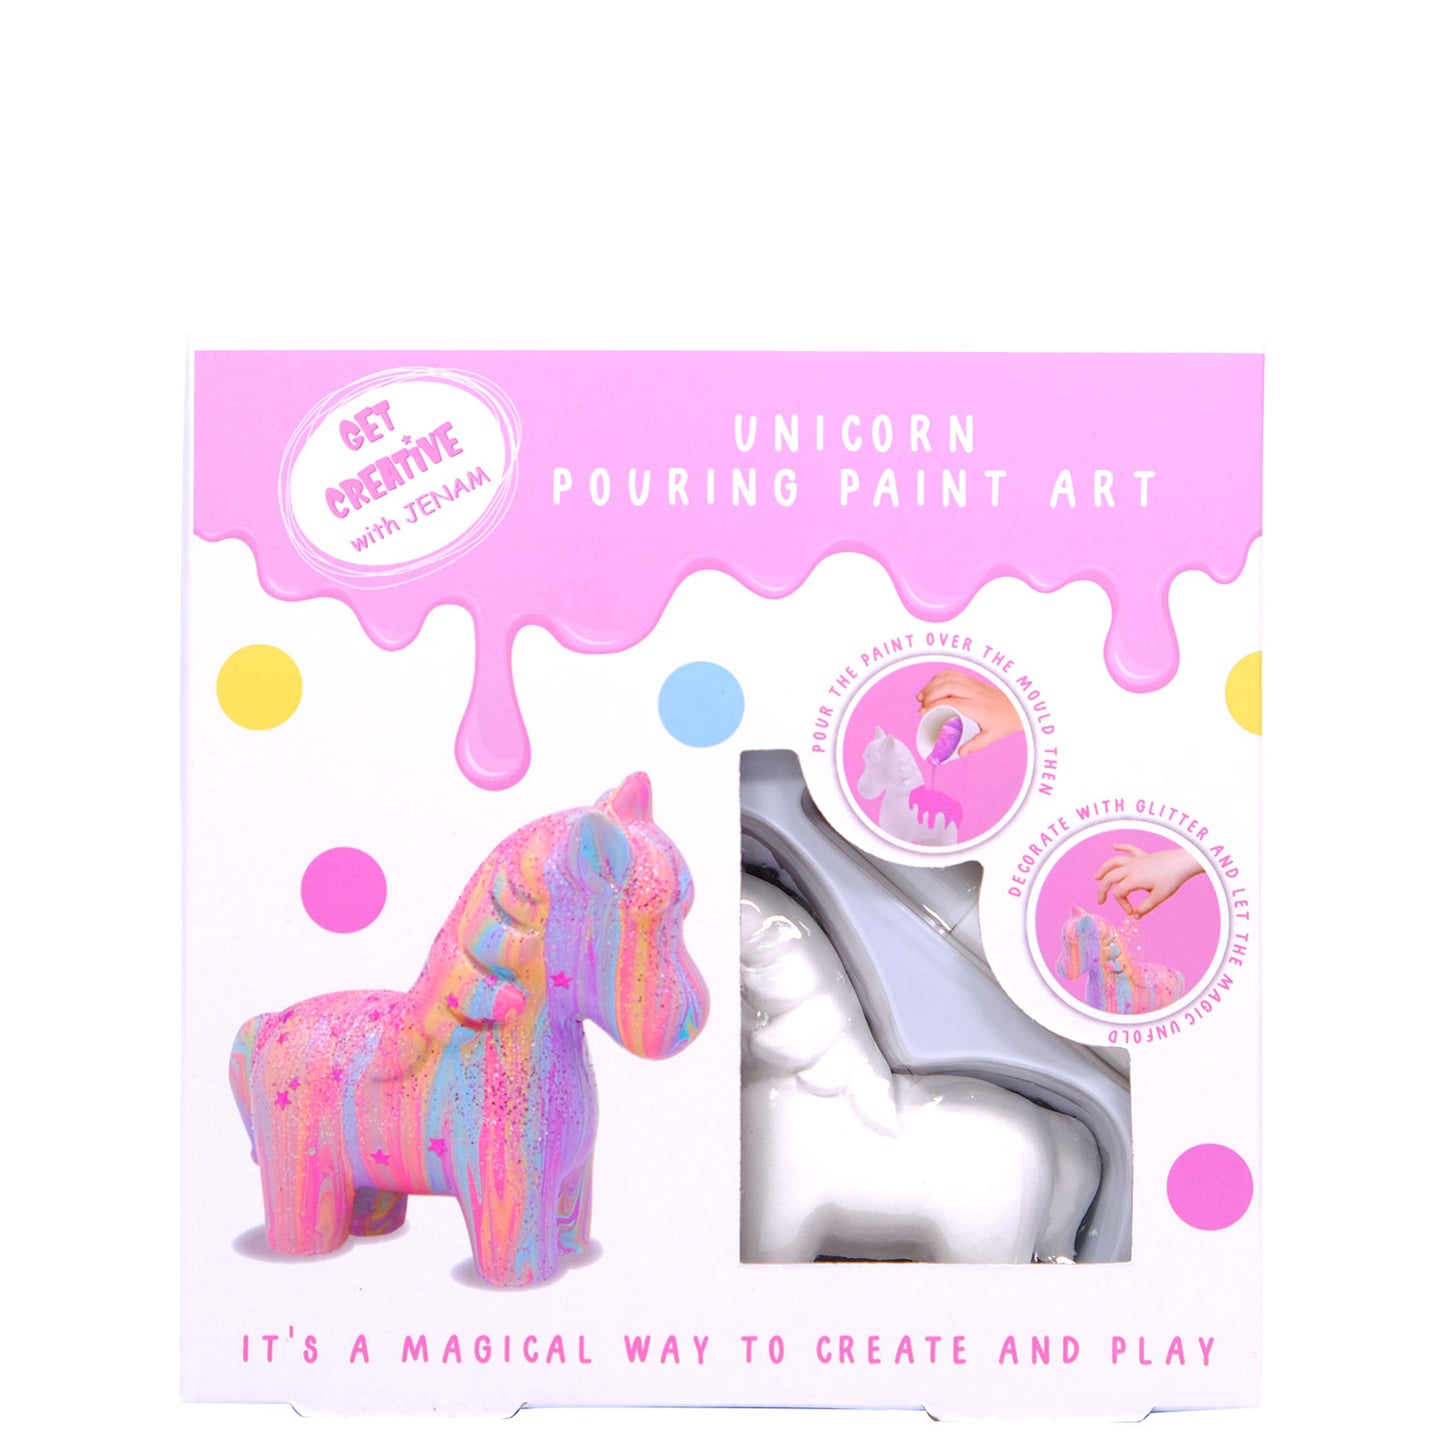 Unicorn Pouring Paint Art - 1 X Plaster Unicorn, 4 X Pouring Paints, 3 X Glitter Packs & 1 X Glue